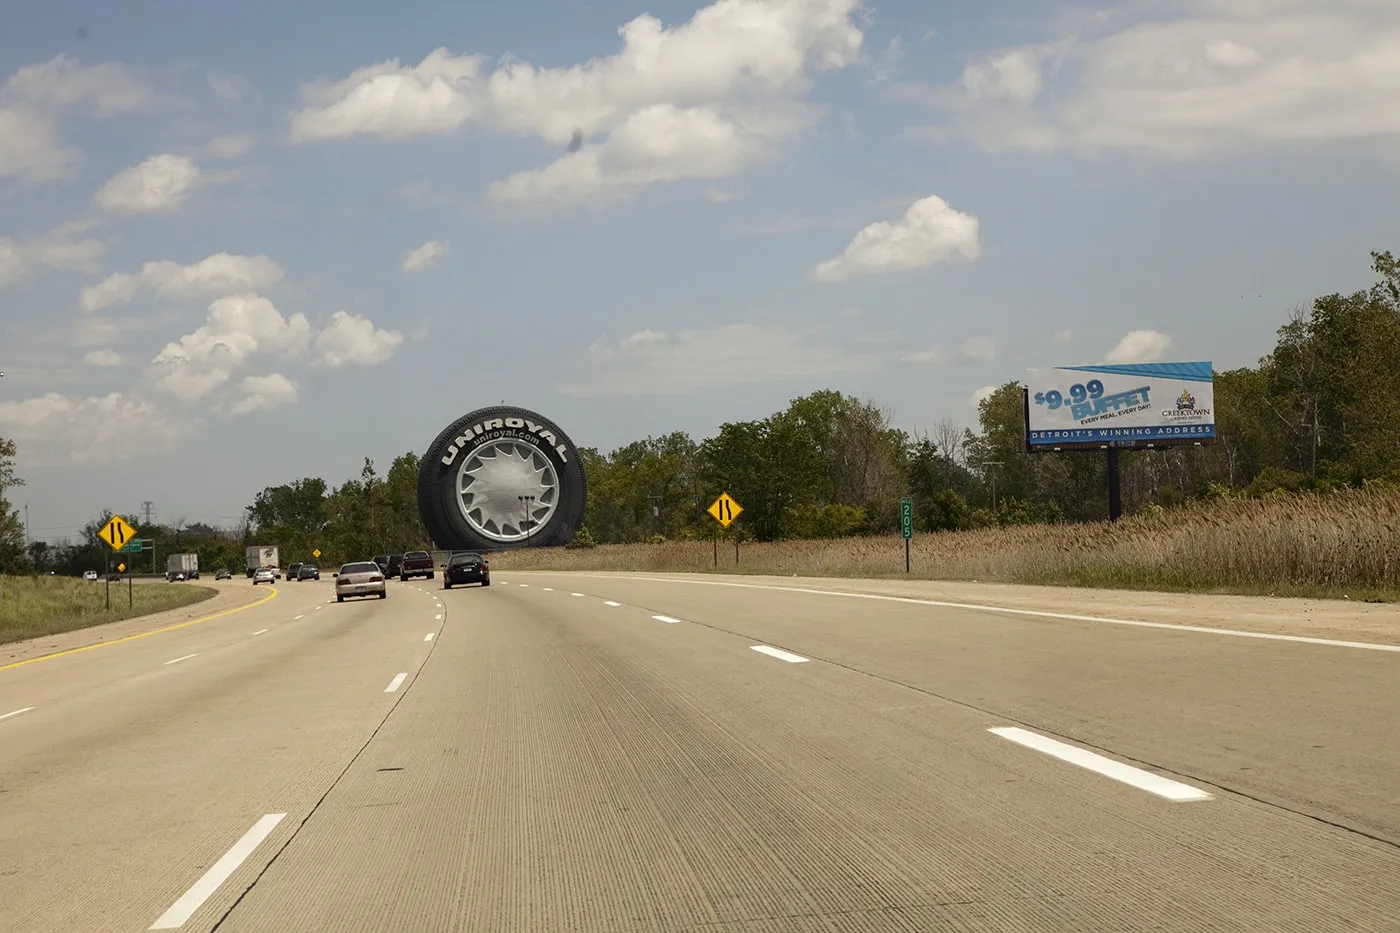 World's Largest Tire in Allen Park, Michigan